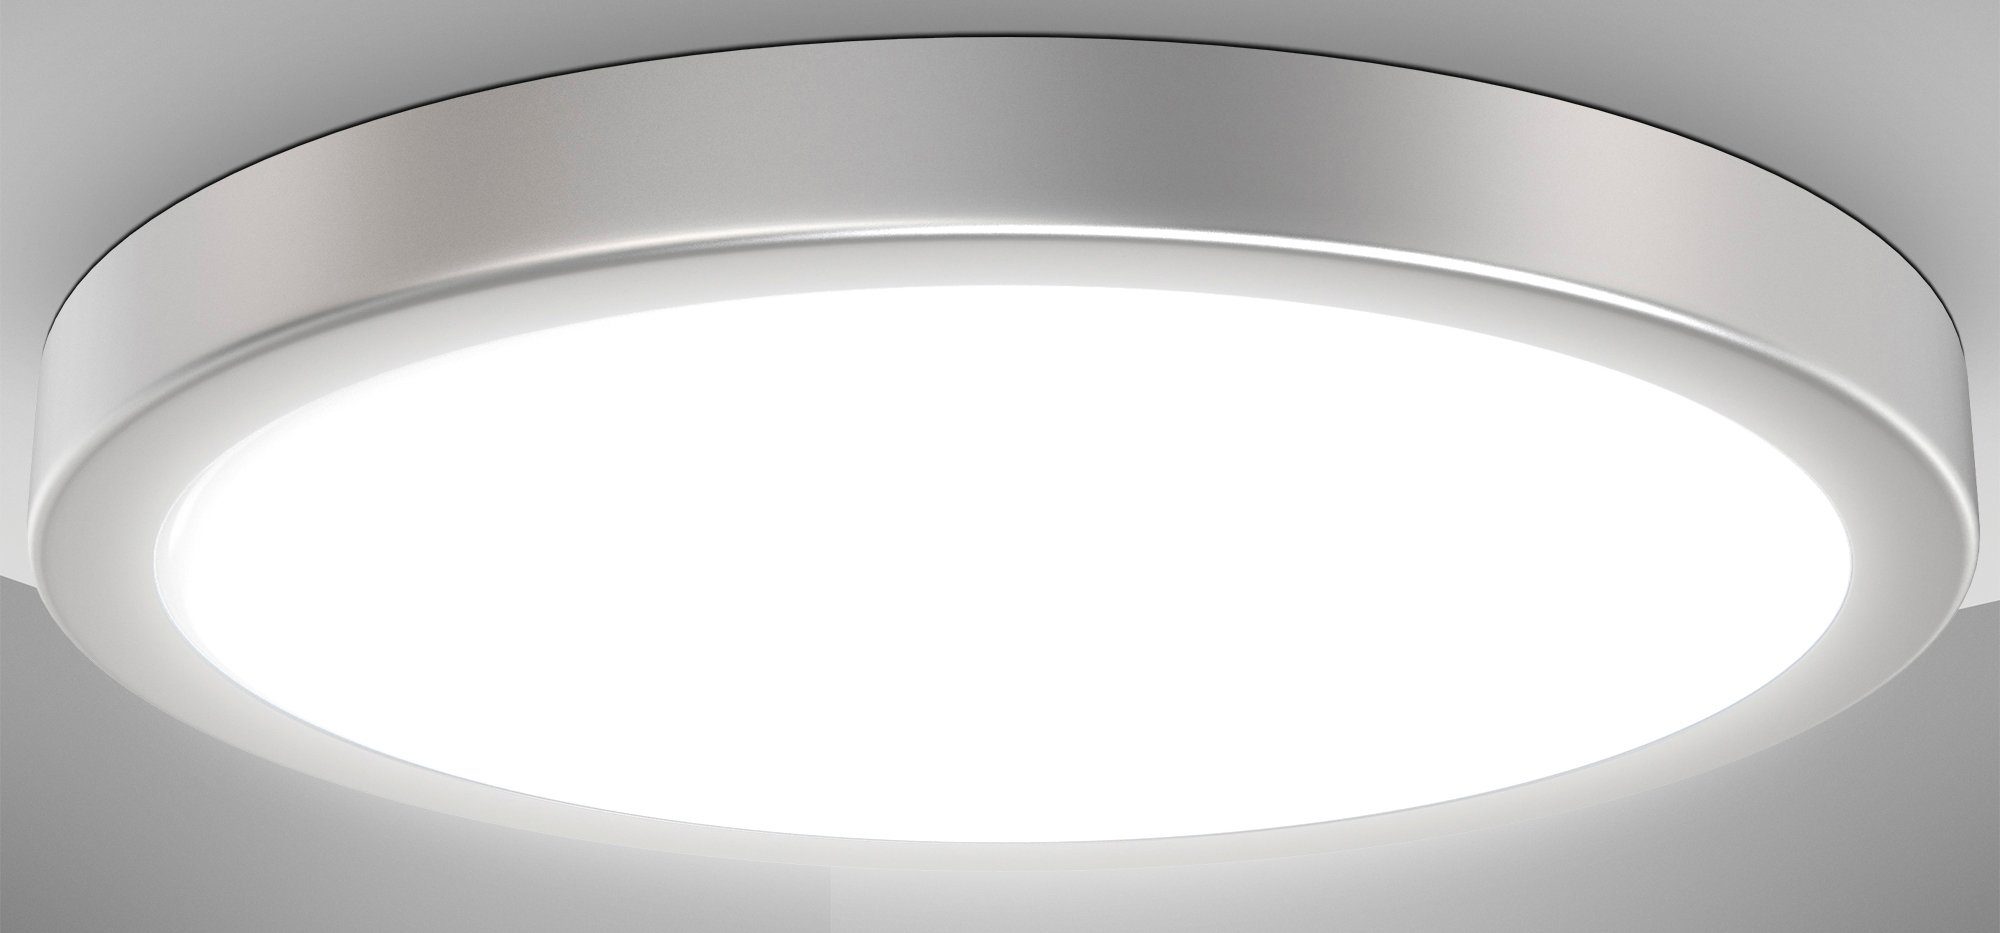 B.K.Licht LED Deckenleuchte integriert, Licht, 4.000K, Neutralweißes fest 24W, Küchenlampe Deckenlampe, Ø38cm, Neutralweiß, 3.000Lm, BK_DL1537 Silberfarbig, LED LED